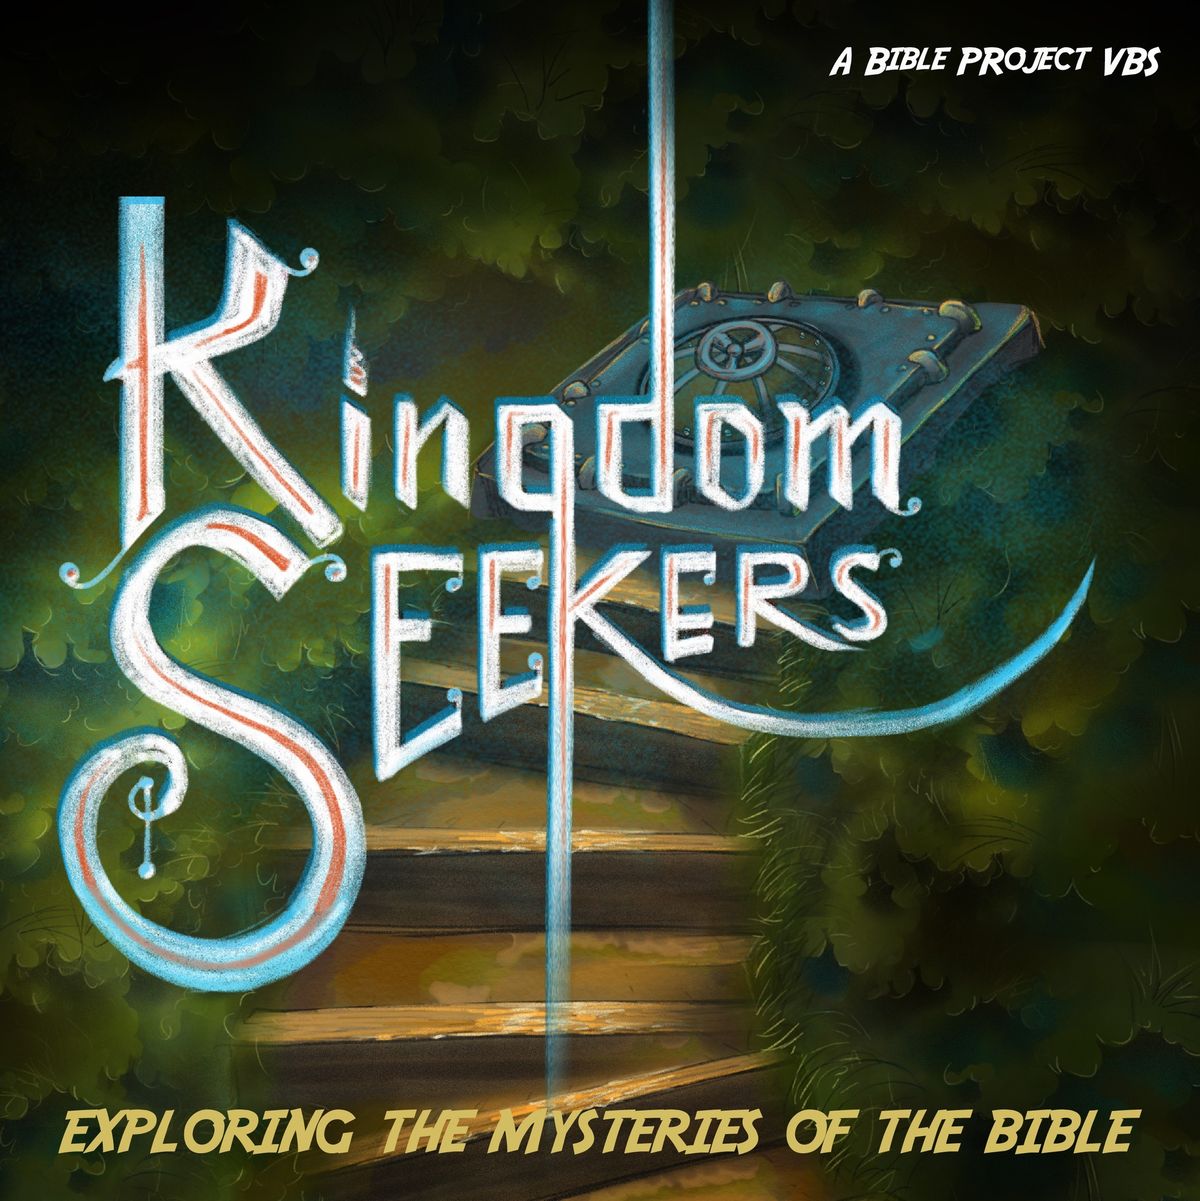 V.B.S. Kingdom Seekers